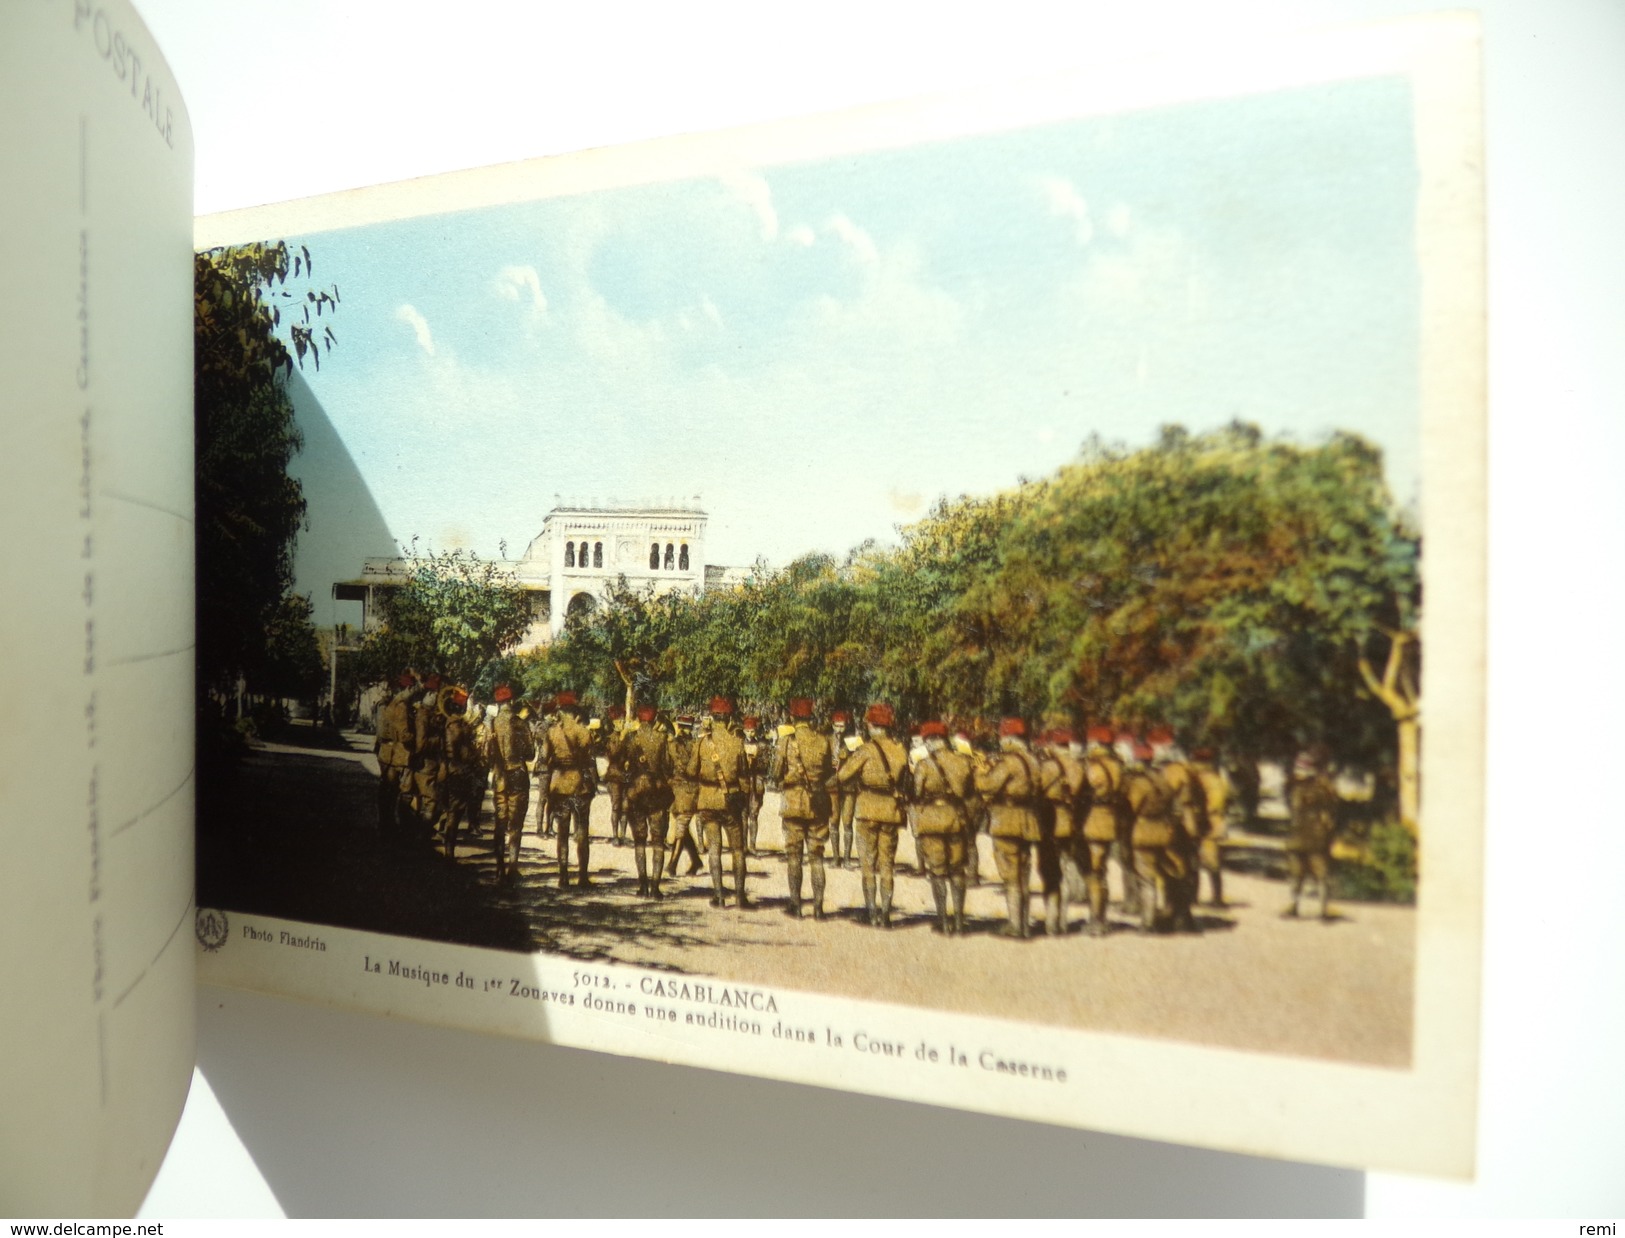 Souvenir du 1er Régiment de ZOUAVES à CASABLANCA Carnet de 18 Cartes Militaire Soldat Armée Guerre Caserne Infanterie